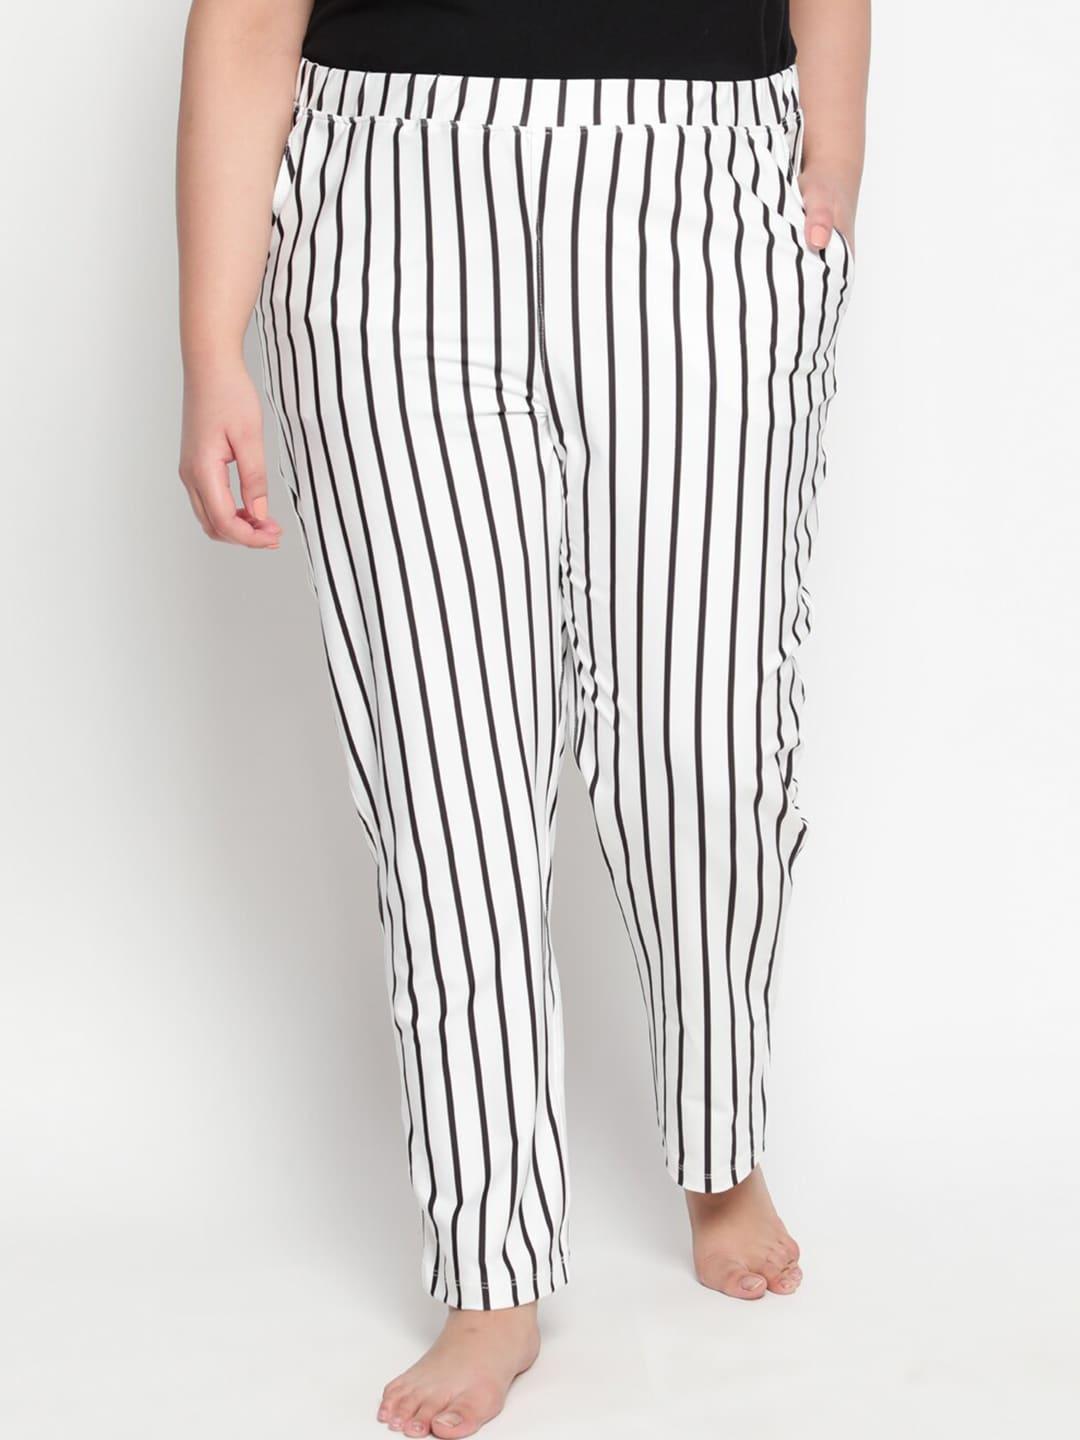 amydus women plus size black & white striped lounge pants